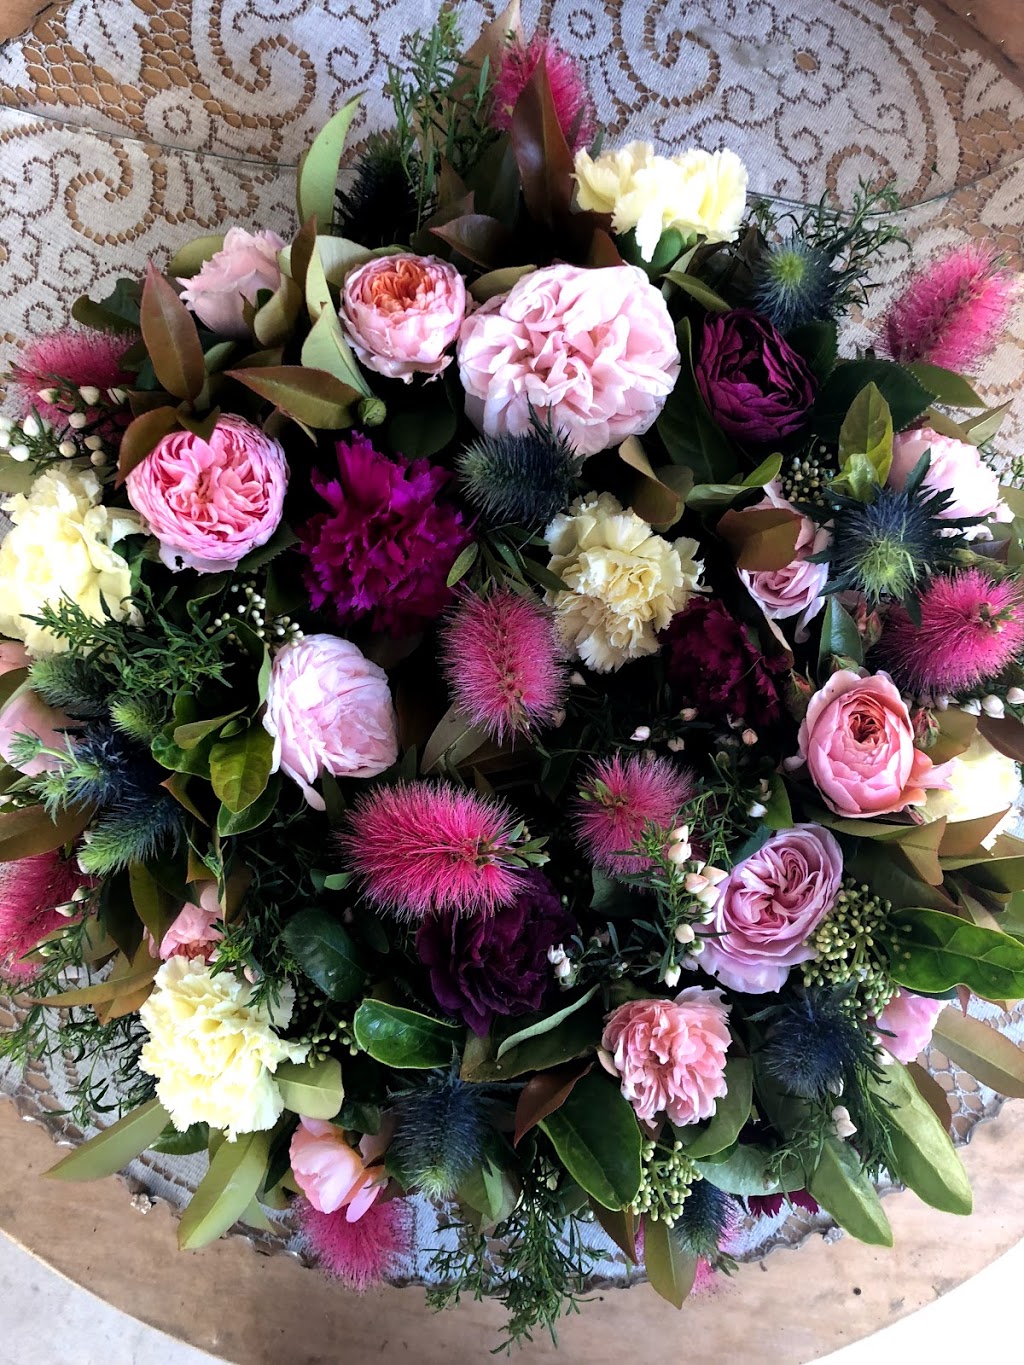 Koonoomoo flowers & florrangements - 7095 Goulburn Valley Hwy ...